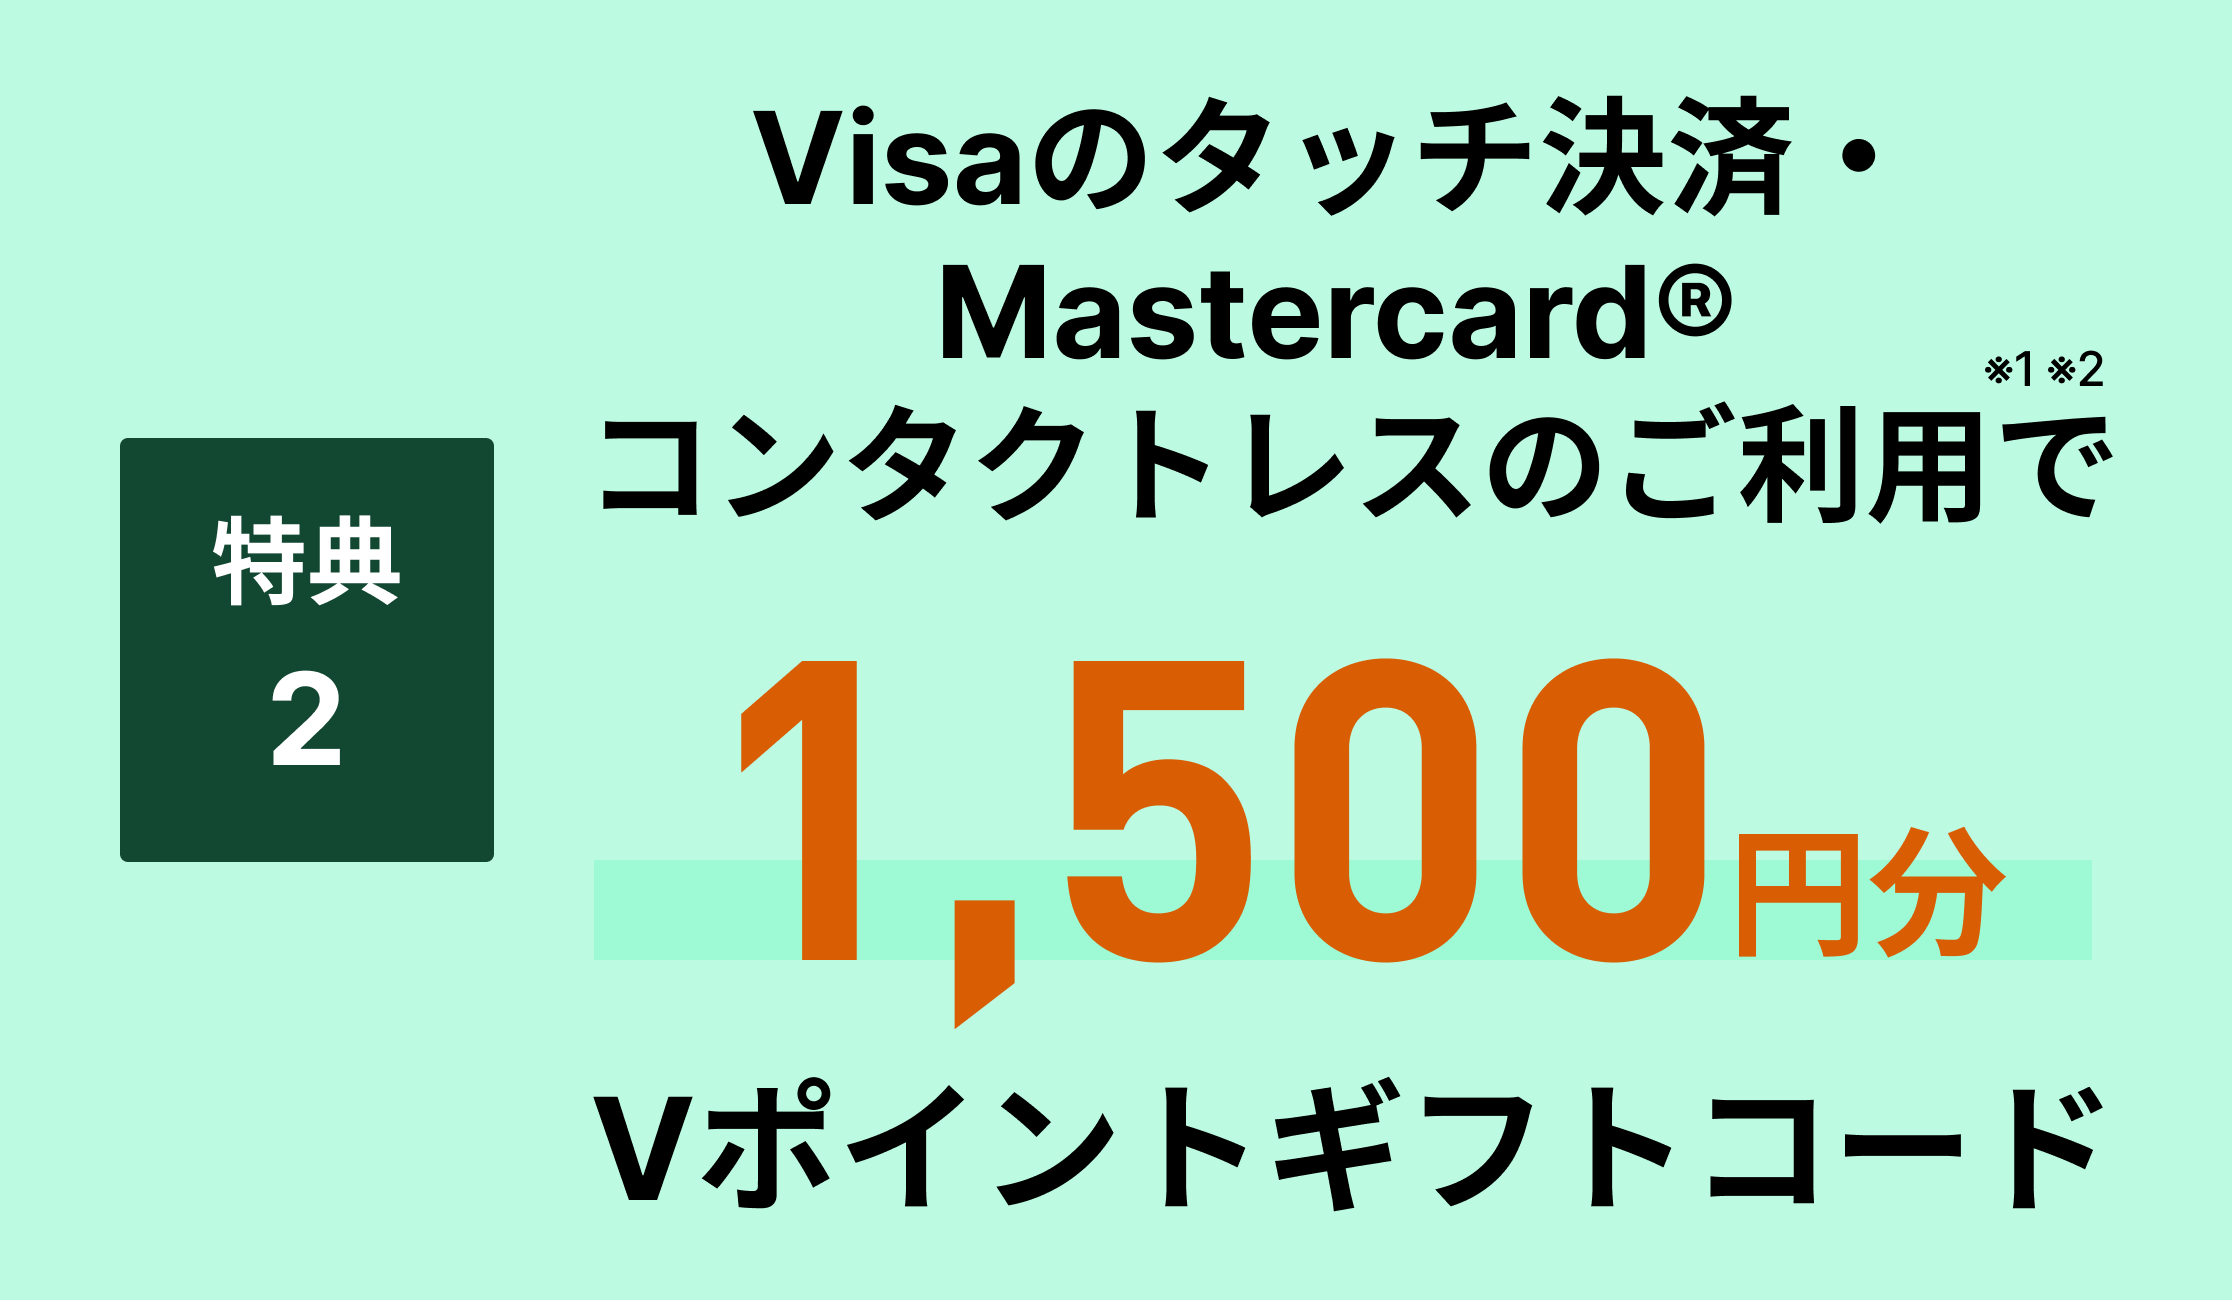 特典2Visaのタッチ決済・Mastercard®コンタクトレスのご利用で1,500円分Vポイントギフトコード